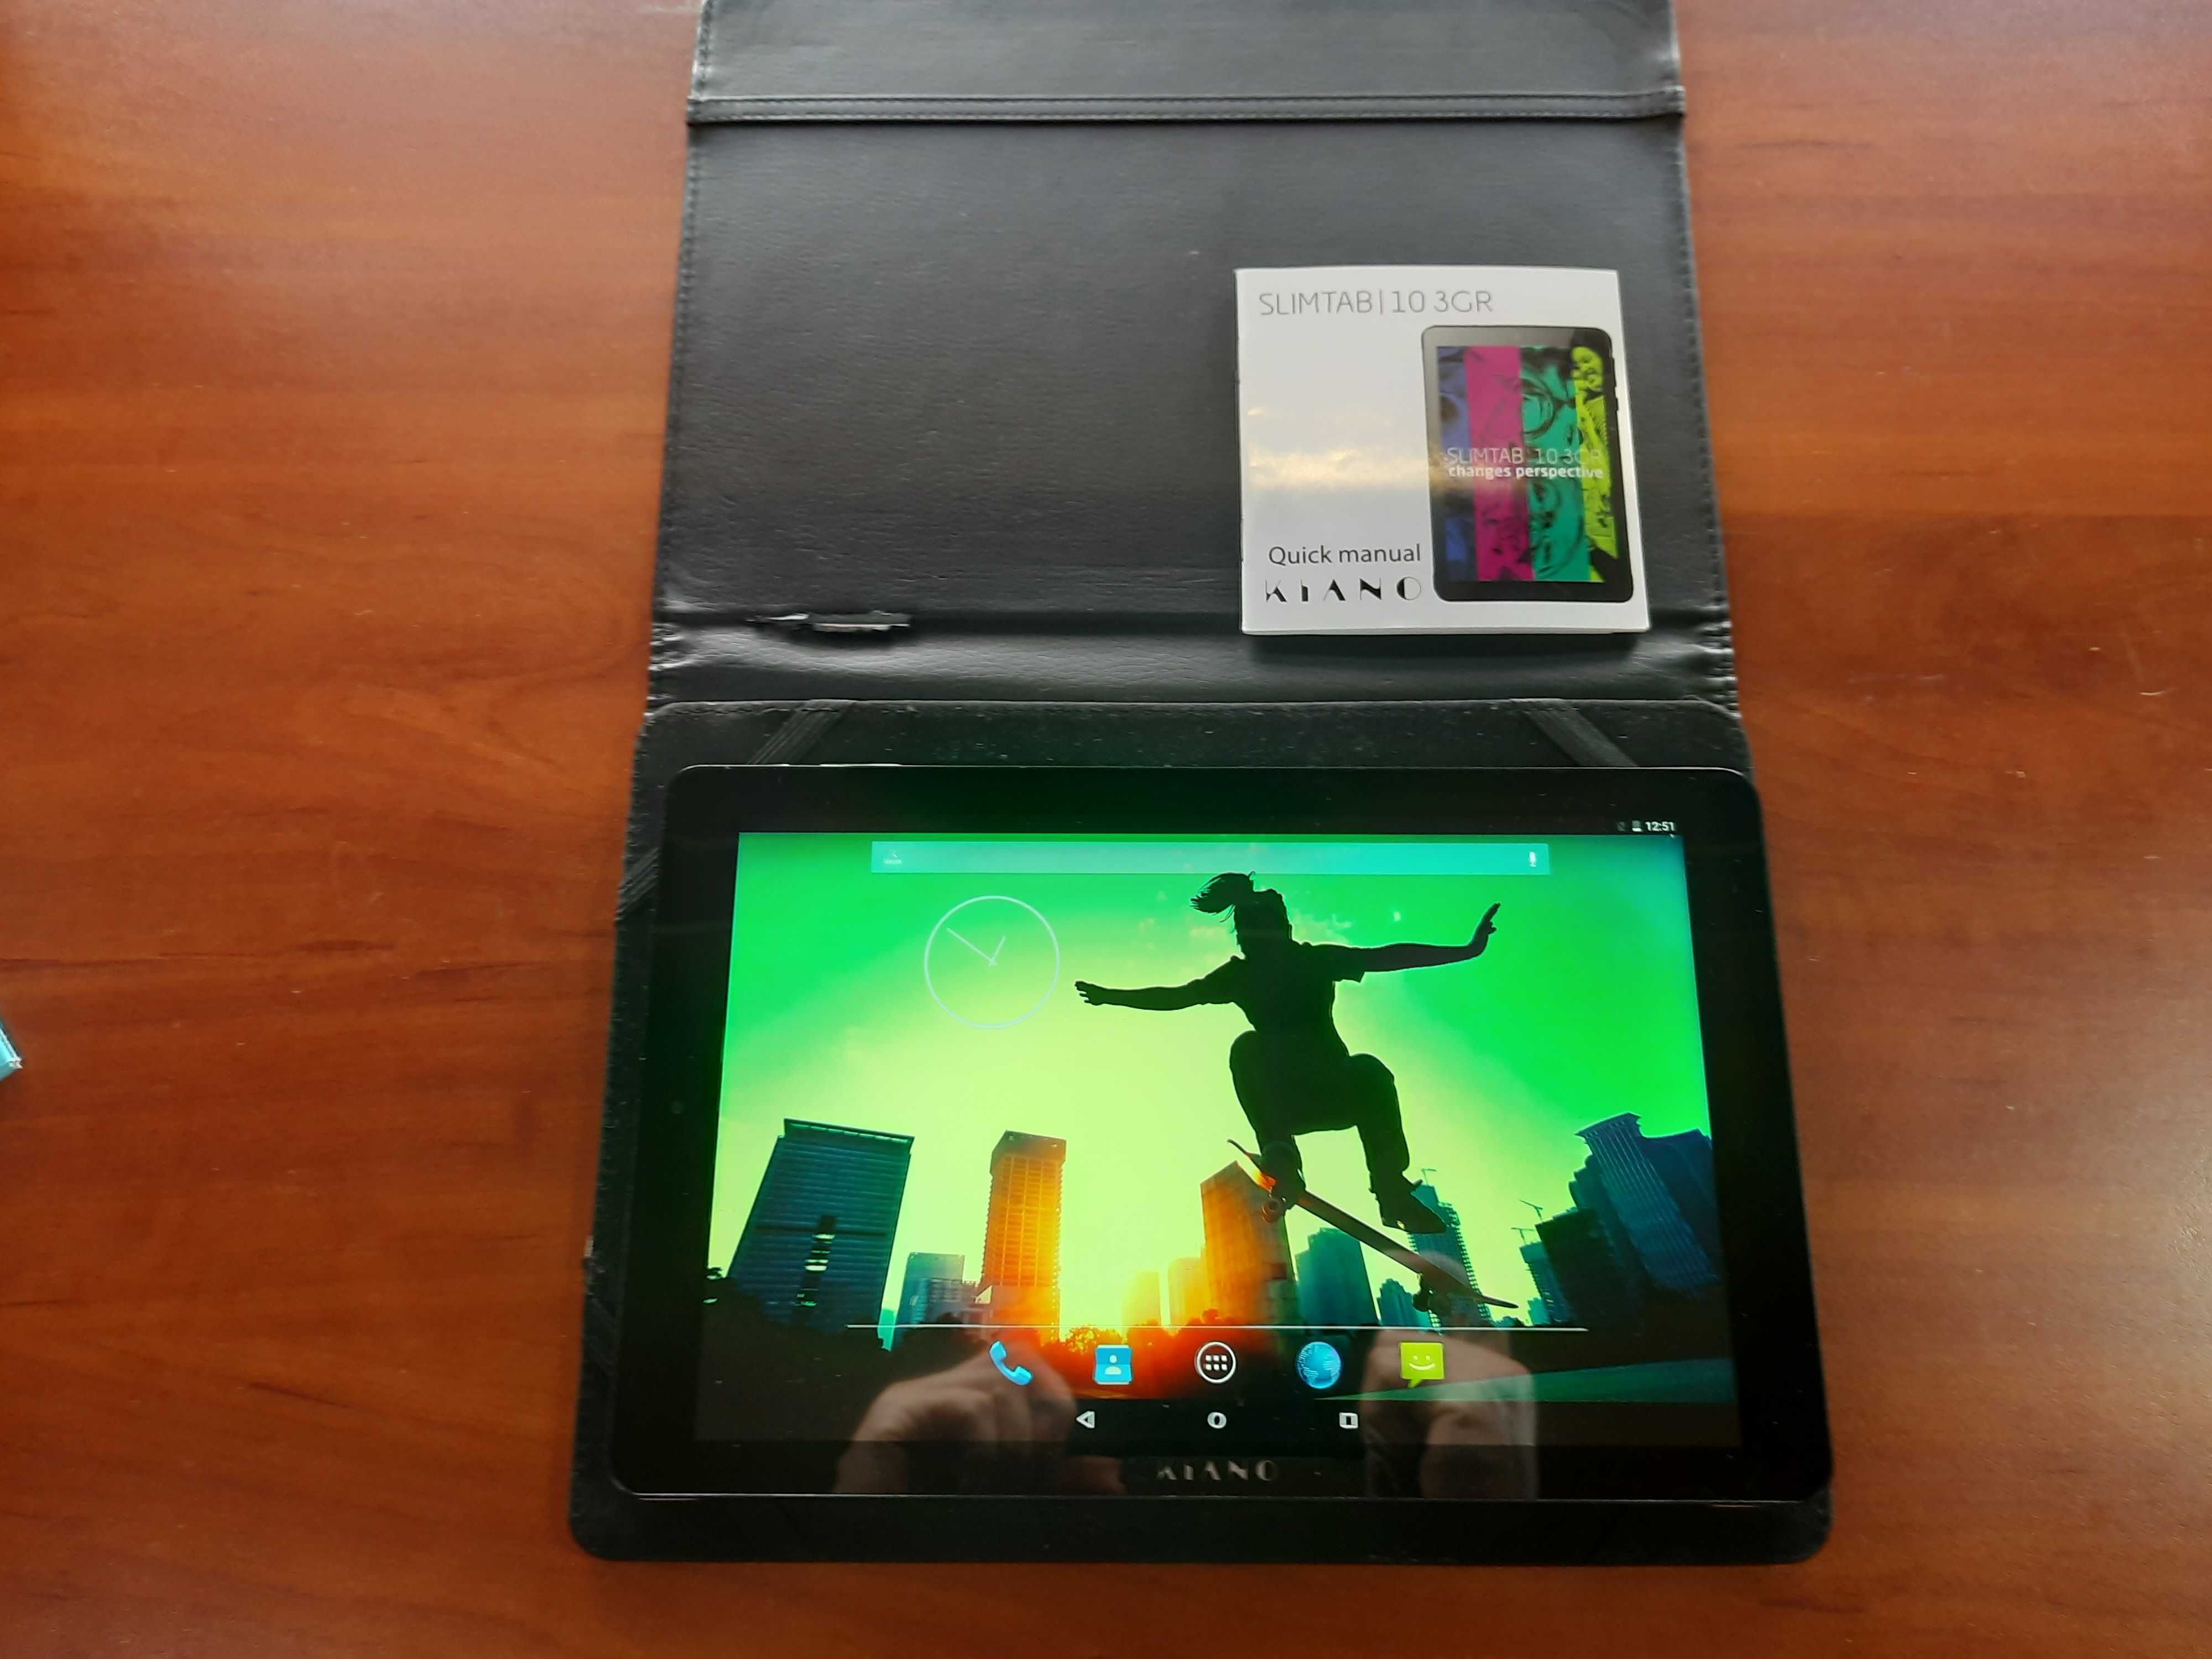 Tablet Kiano Slim Tab 10 3GR 10" 1 GB / 8 GB czarny